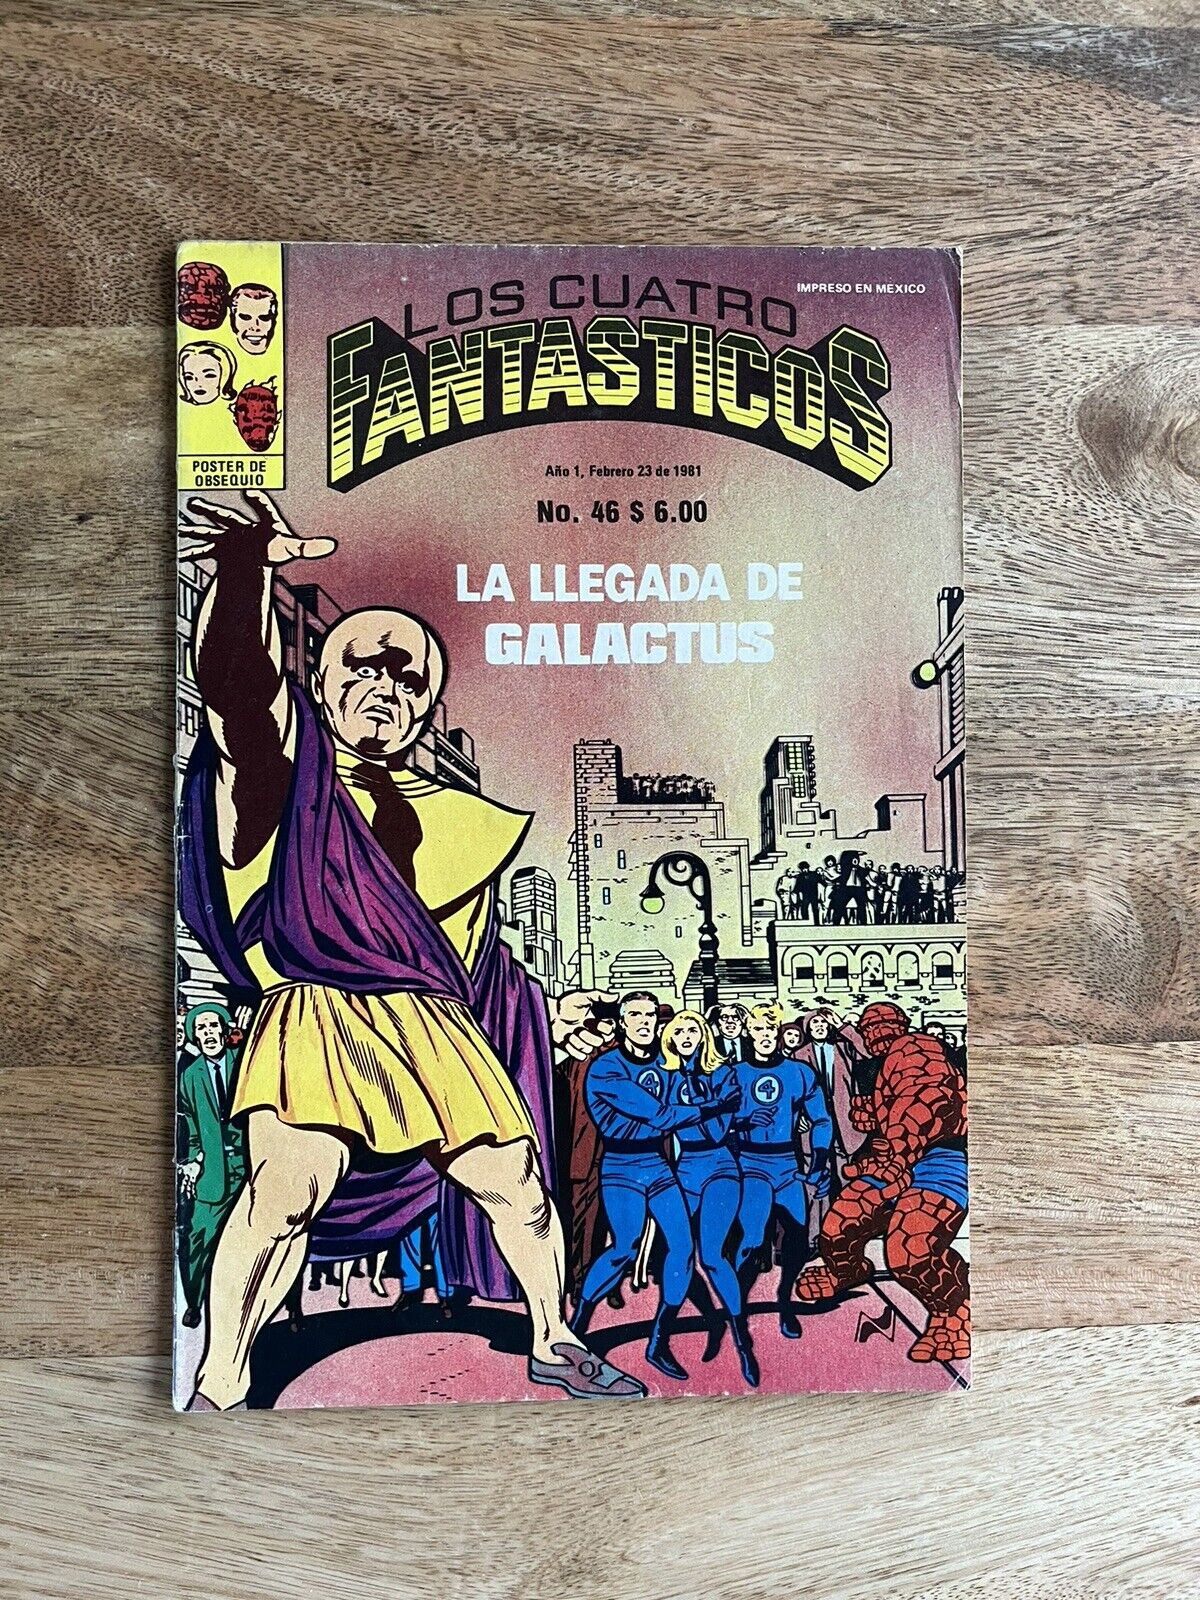 Fantastic Four #48 Mexican Edition (Los Cuatro Fantasticos #46)